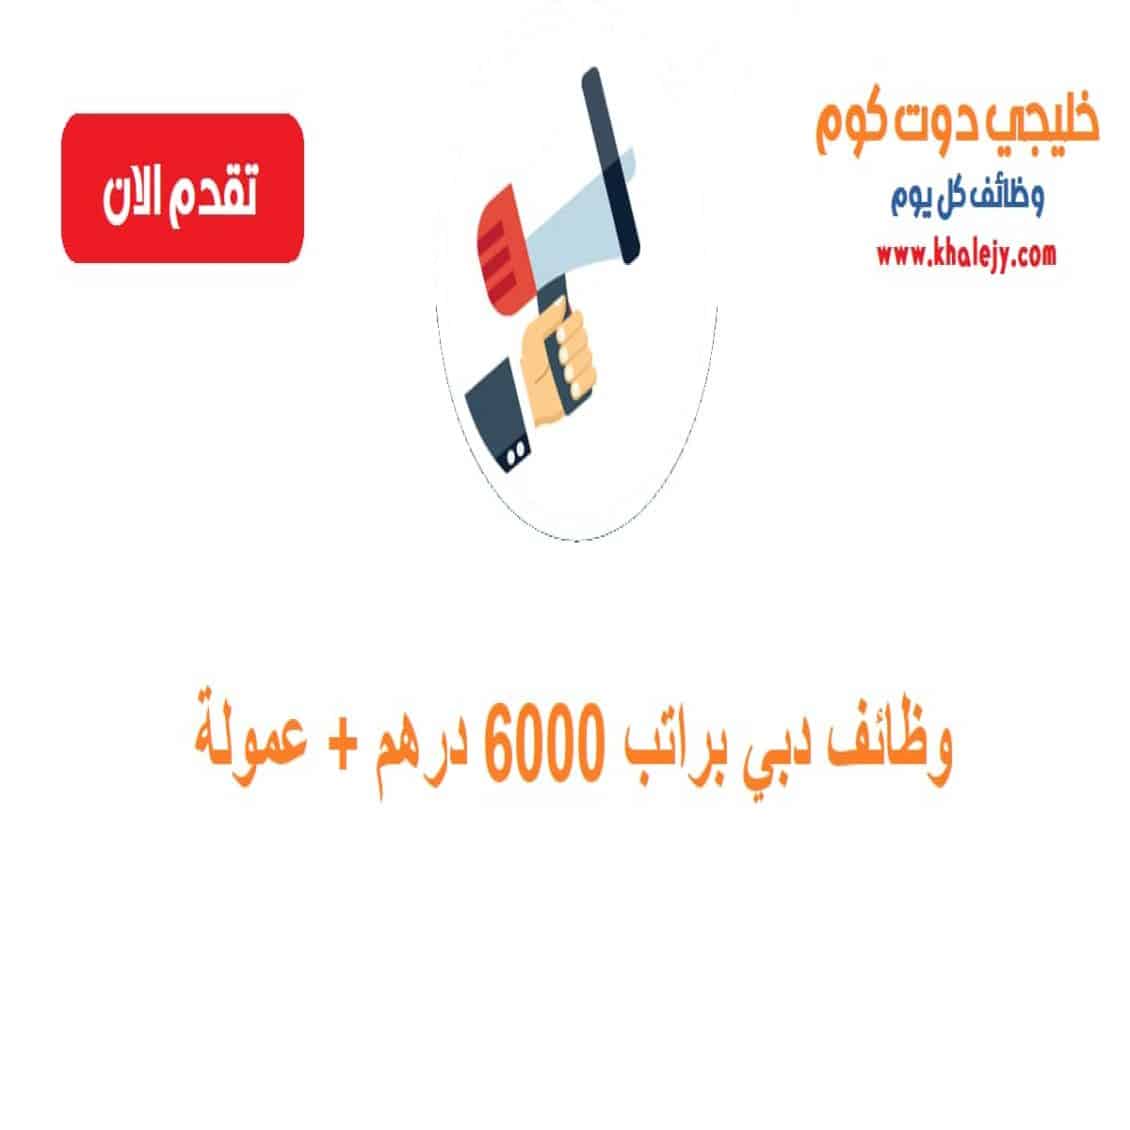 وظائف في دبي براتب 6000 درهم للجنسيات العربية